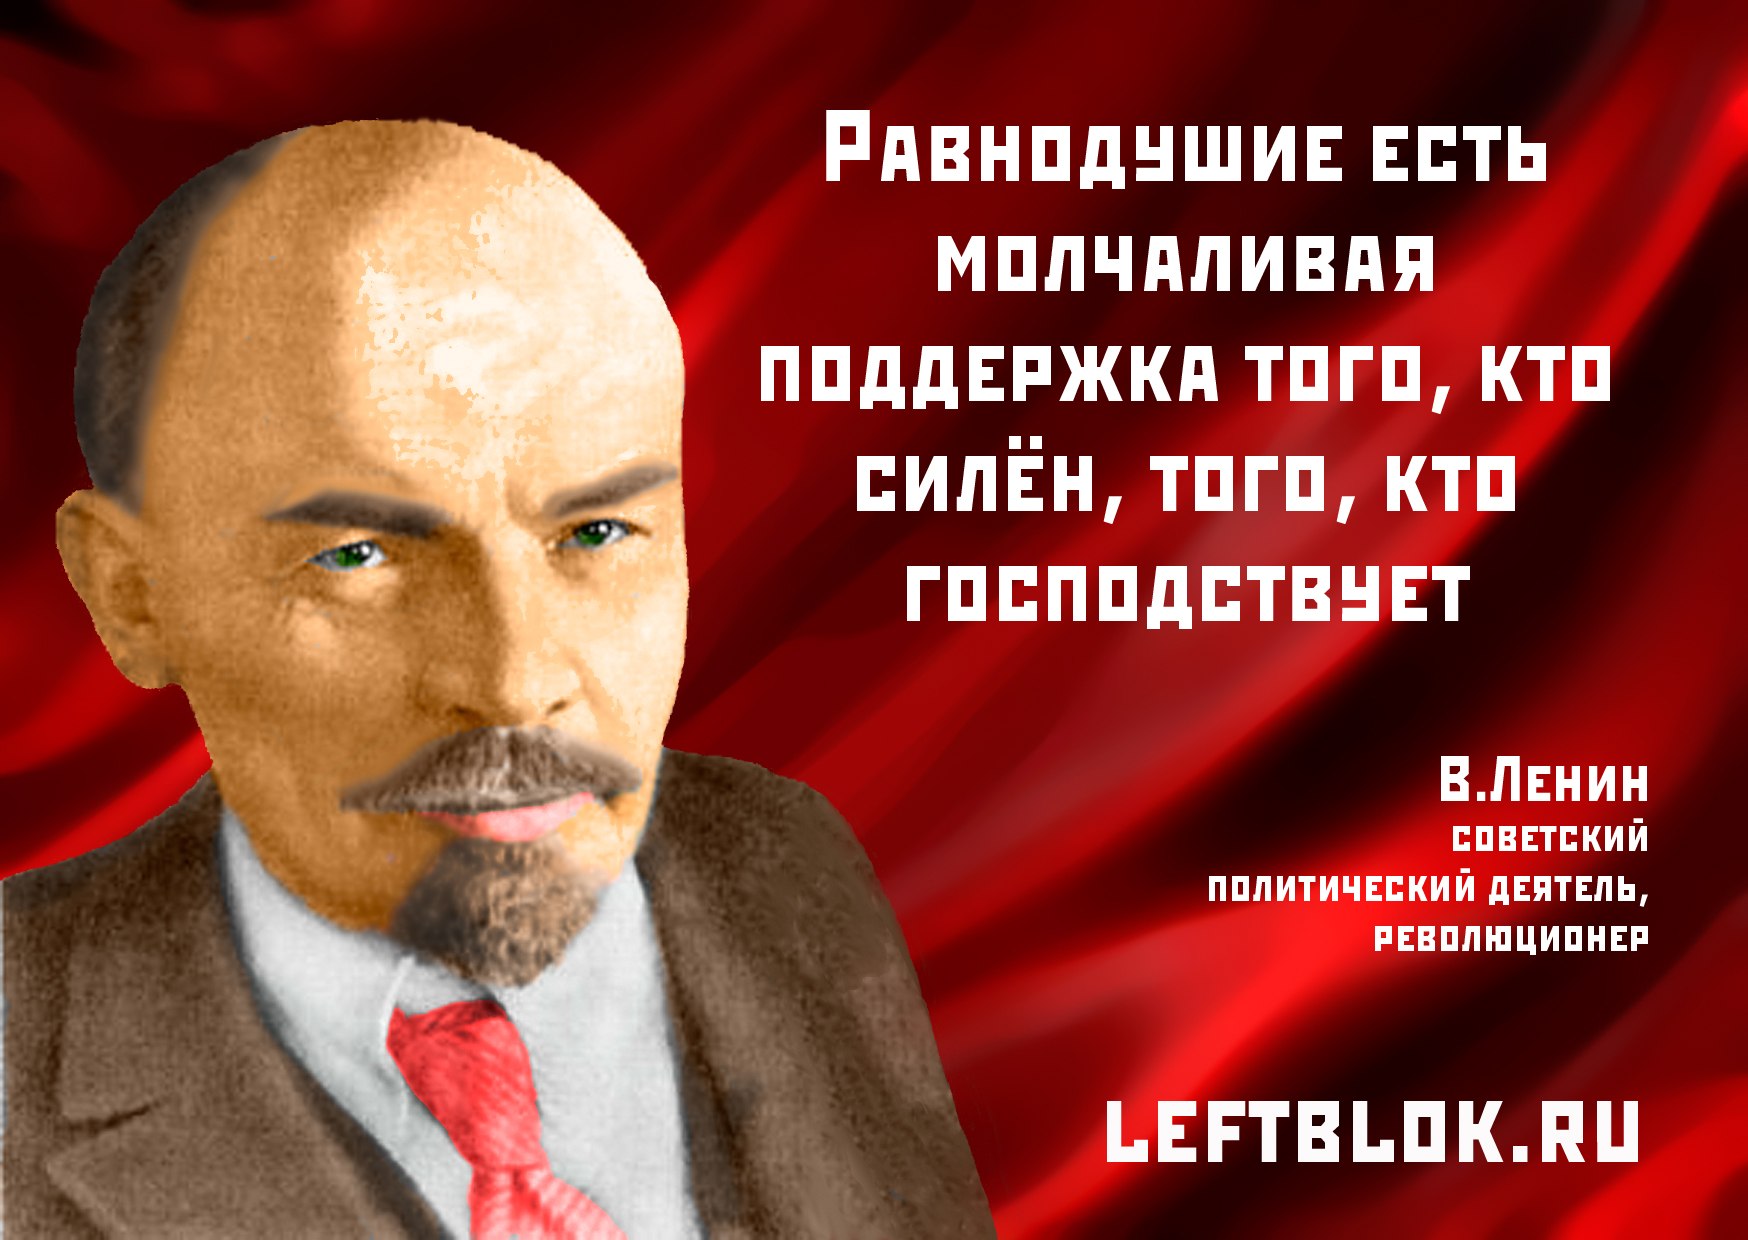 Открытки с днем рождения ленина. Цитаты Ленина. Высказывания Ленина о революции. Цитаты Ленина о революции.